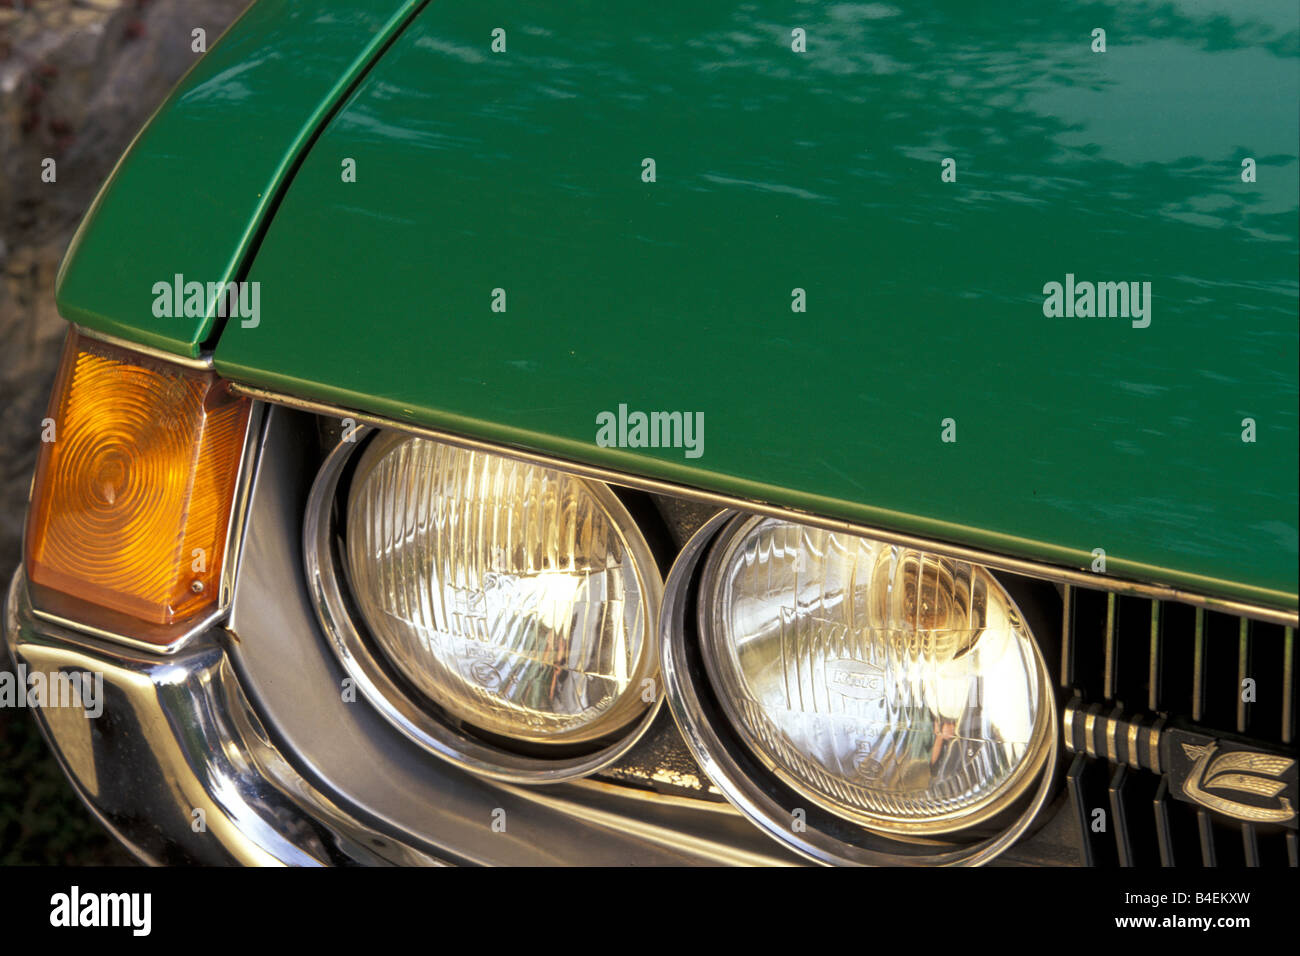 Auto, Toyota Celica, Coupé, Coupe, grün, Jahr 1971-1977, alte Modellautos,  1970er Jahre, 70er Jahre, Detail, Details, Scheinwerfer, Scheinwerfer  Stockfotografie - Alamy